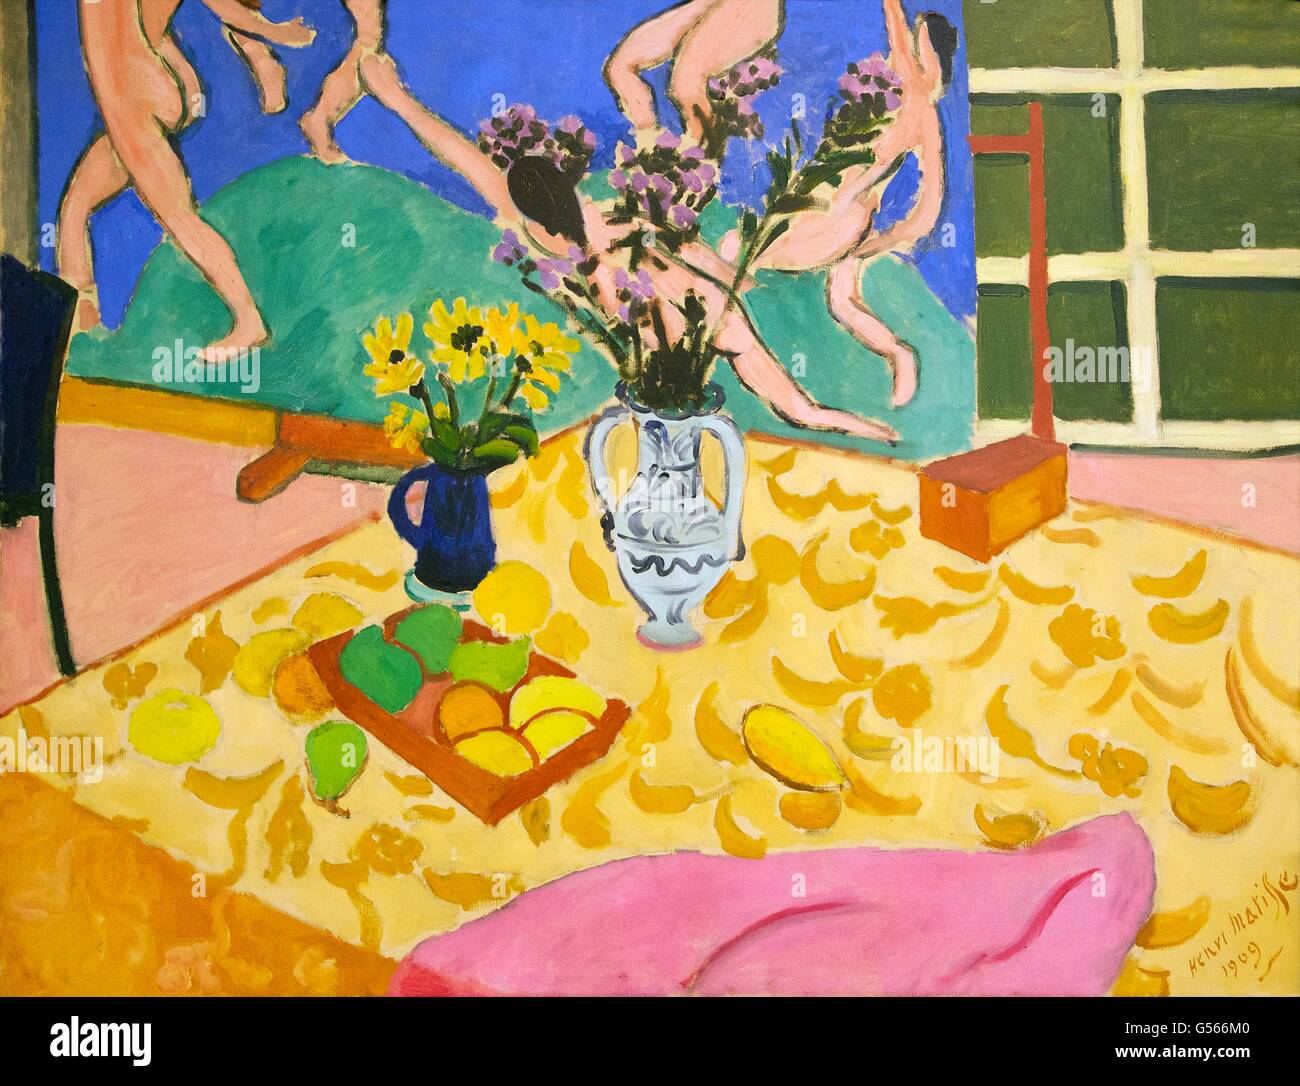 Les fruits, les fleurs et la danse, par Henri Matisse, 1909, Musée de l'Ermitage, Saint-Pétersbourg, Russie Banque D'Images